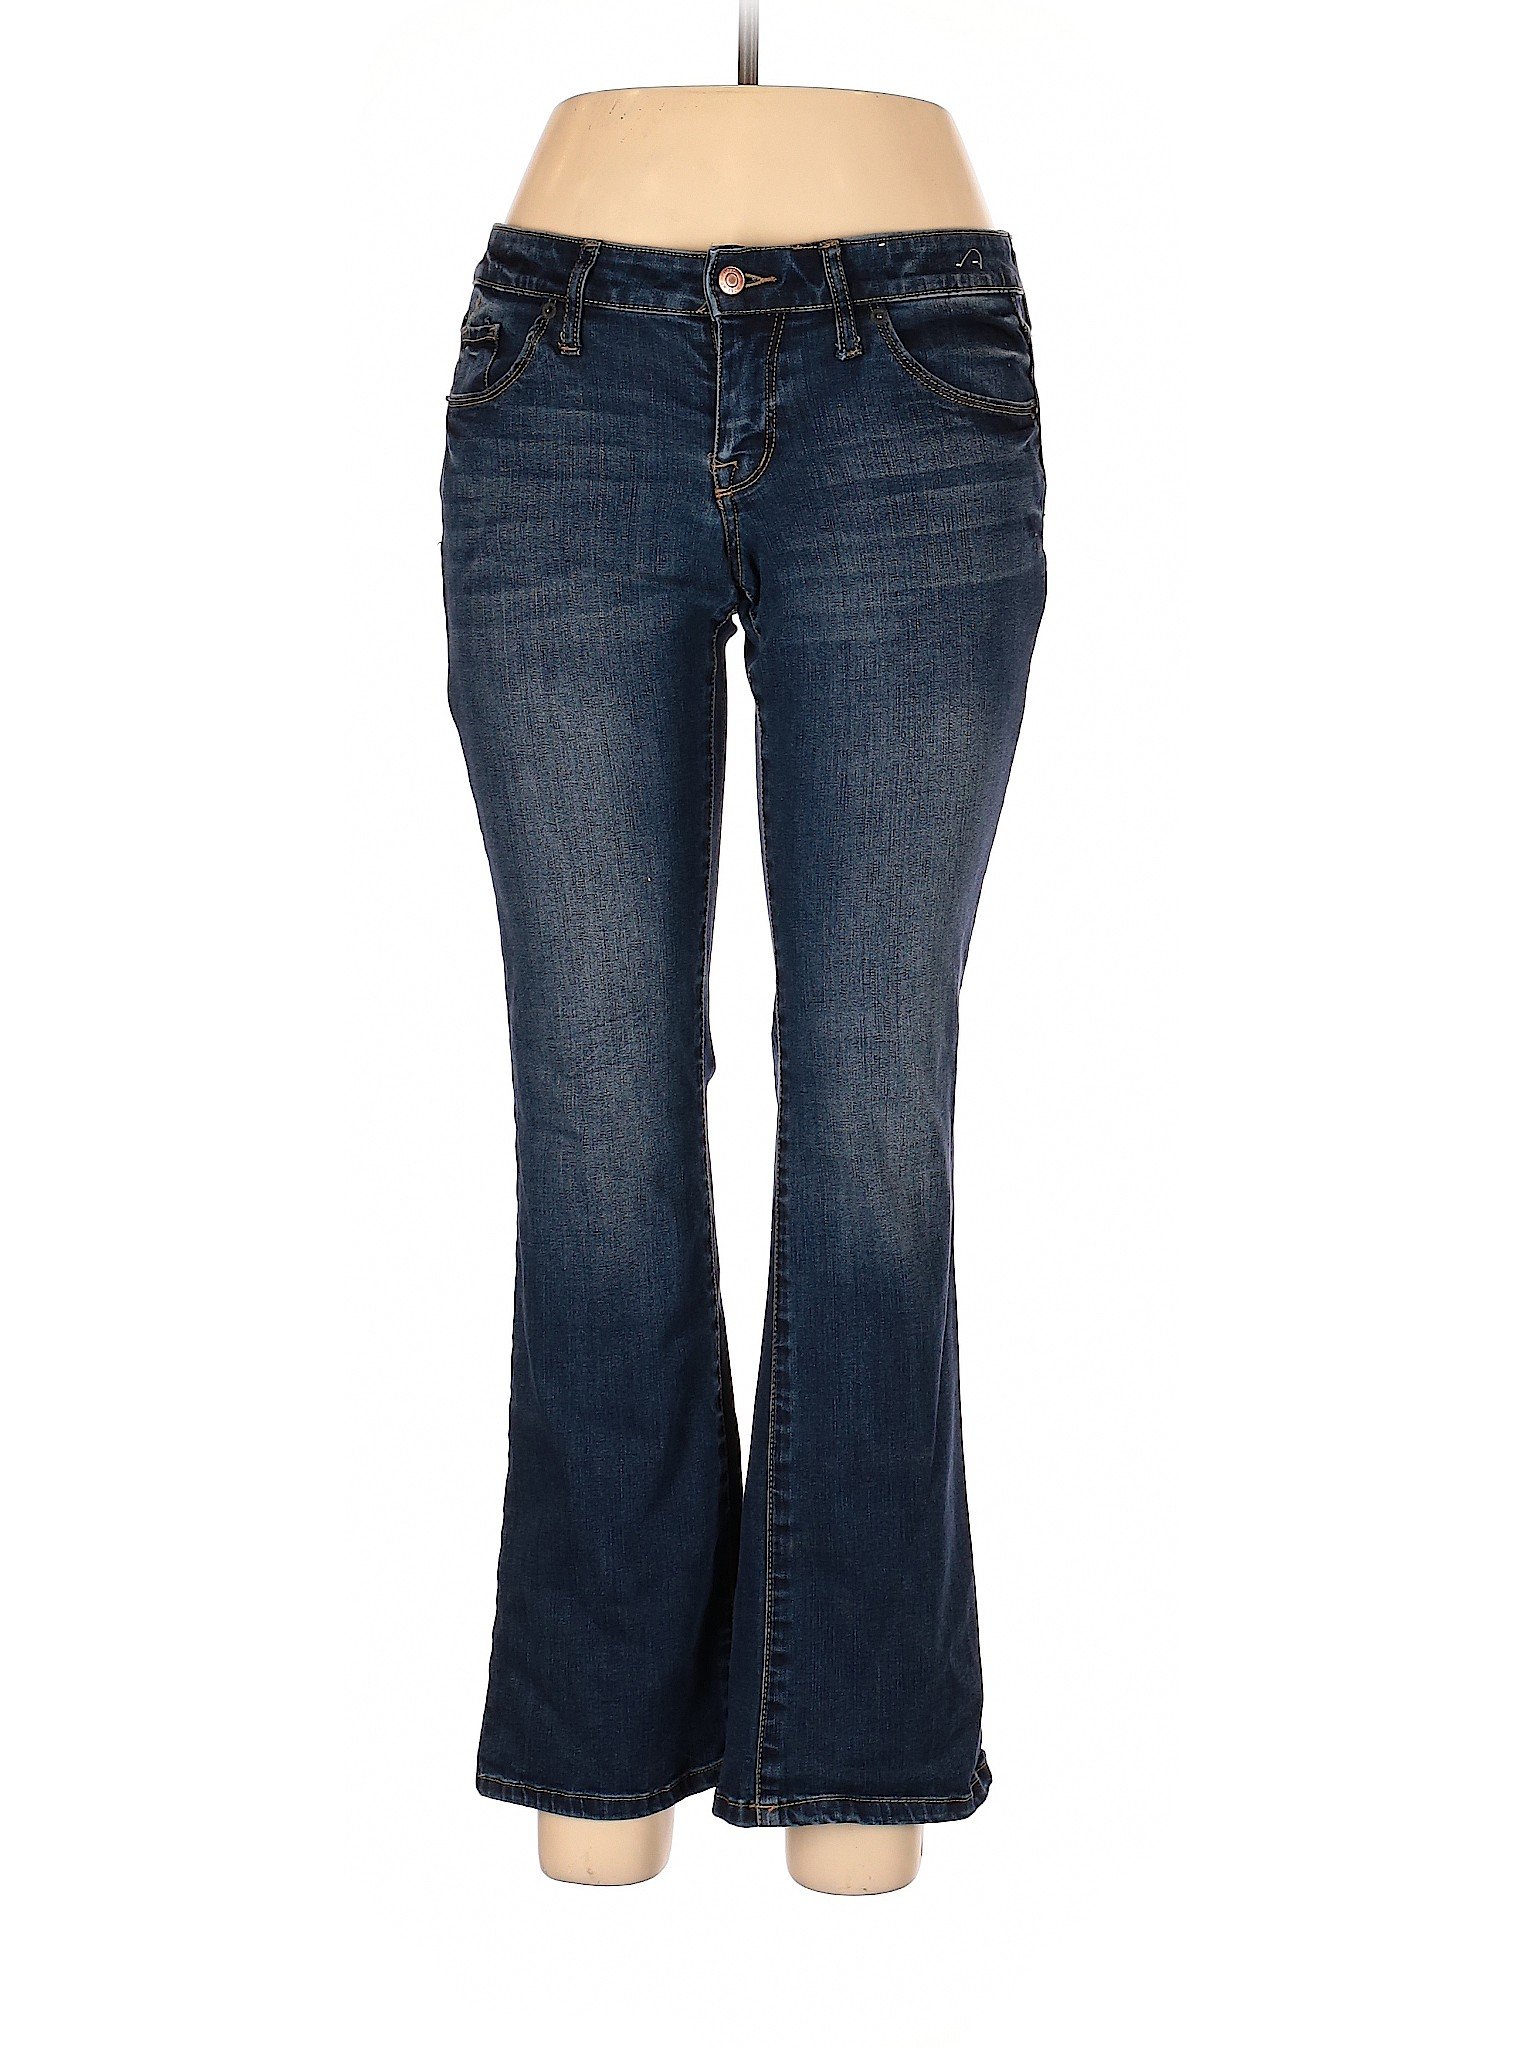 Mossimo Women Blue Jeans 10 | eBay